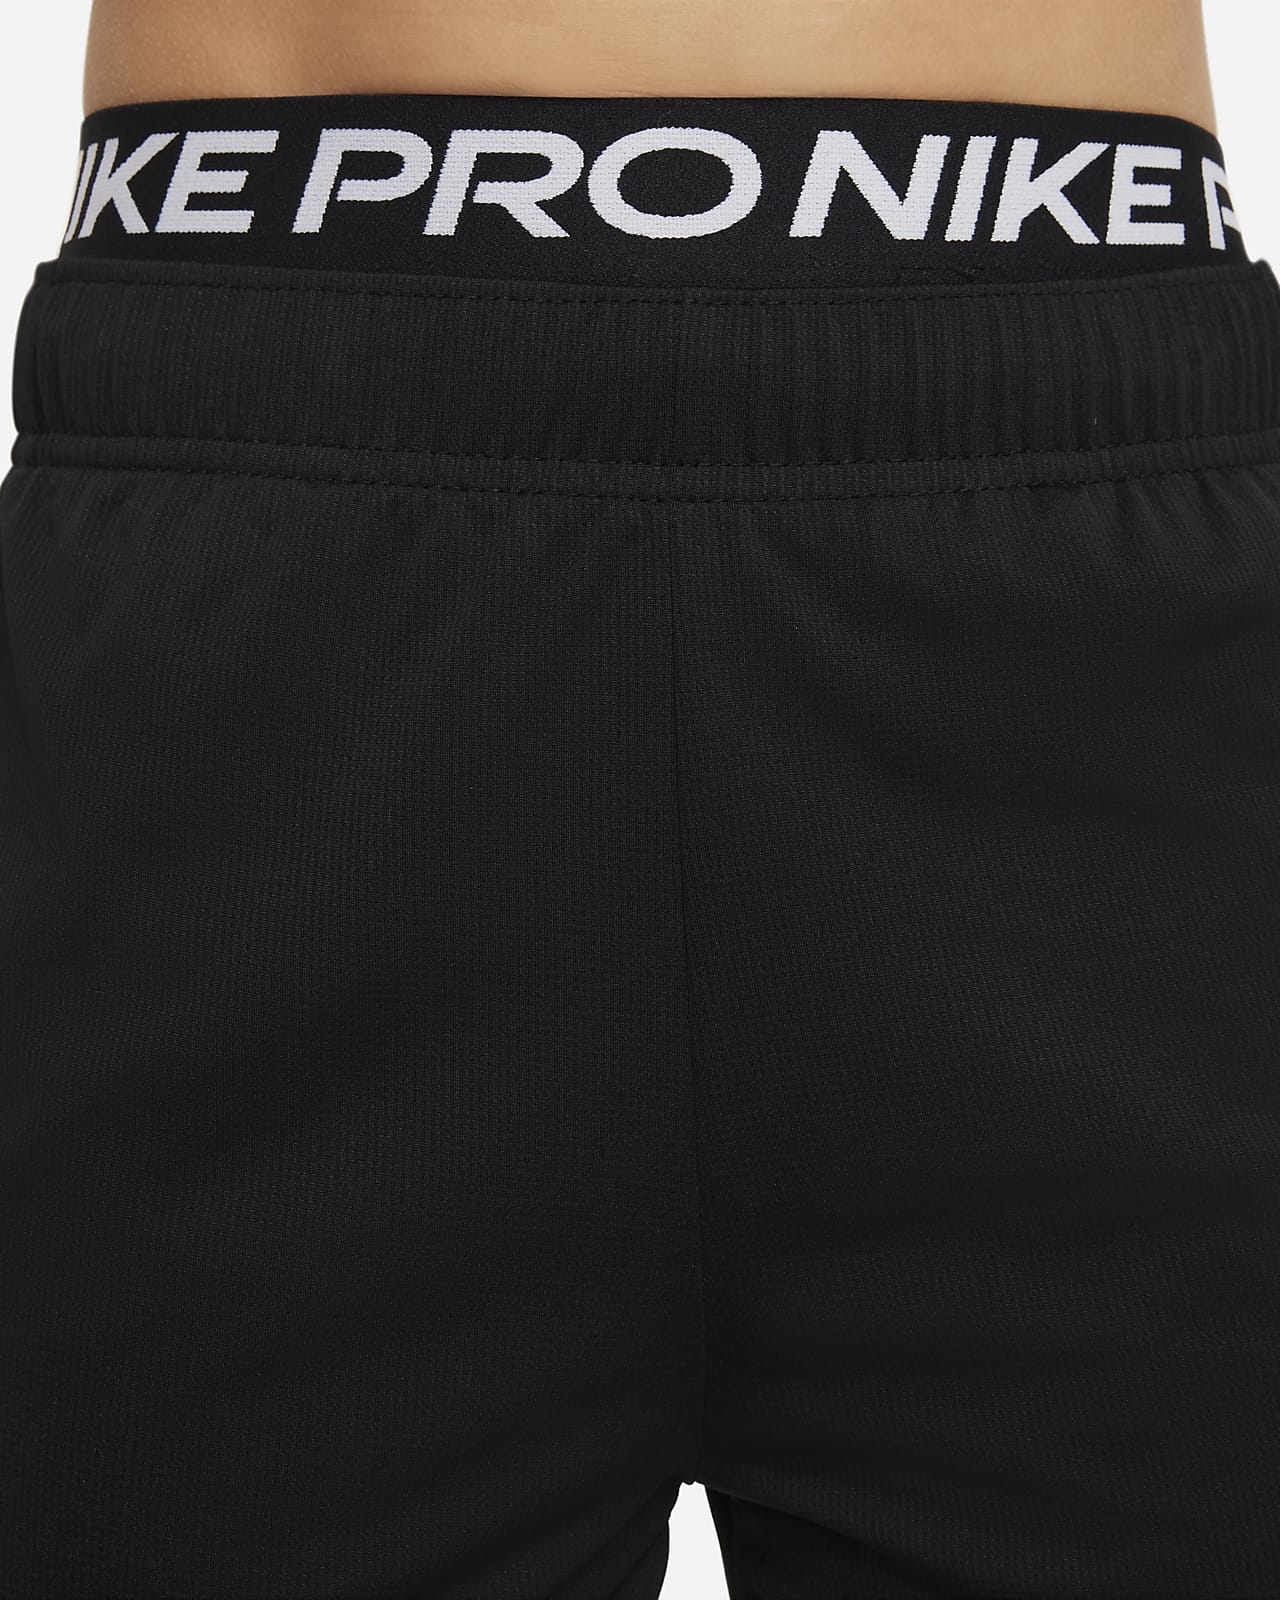 Kan worden berekend Romantiek hoogtepunt Nike Pro Dri-FIT Big Kids' (Boys') Tights. Nike.com